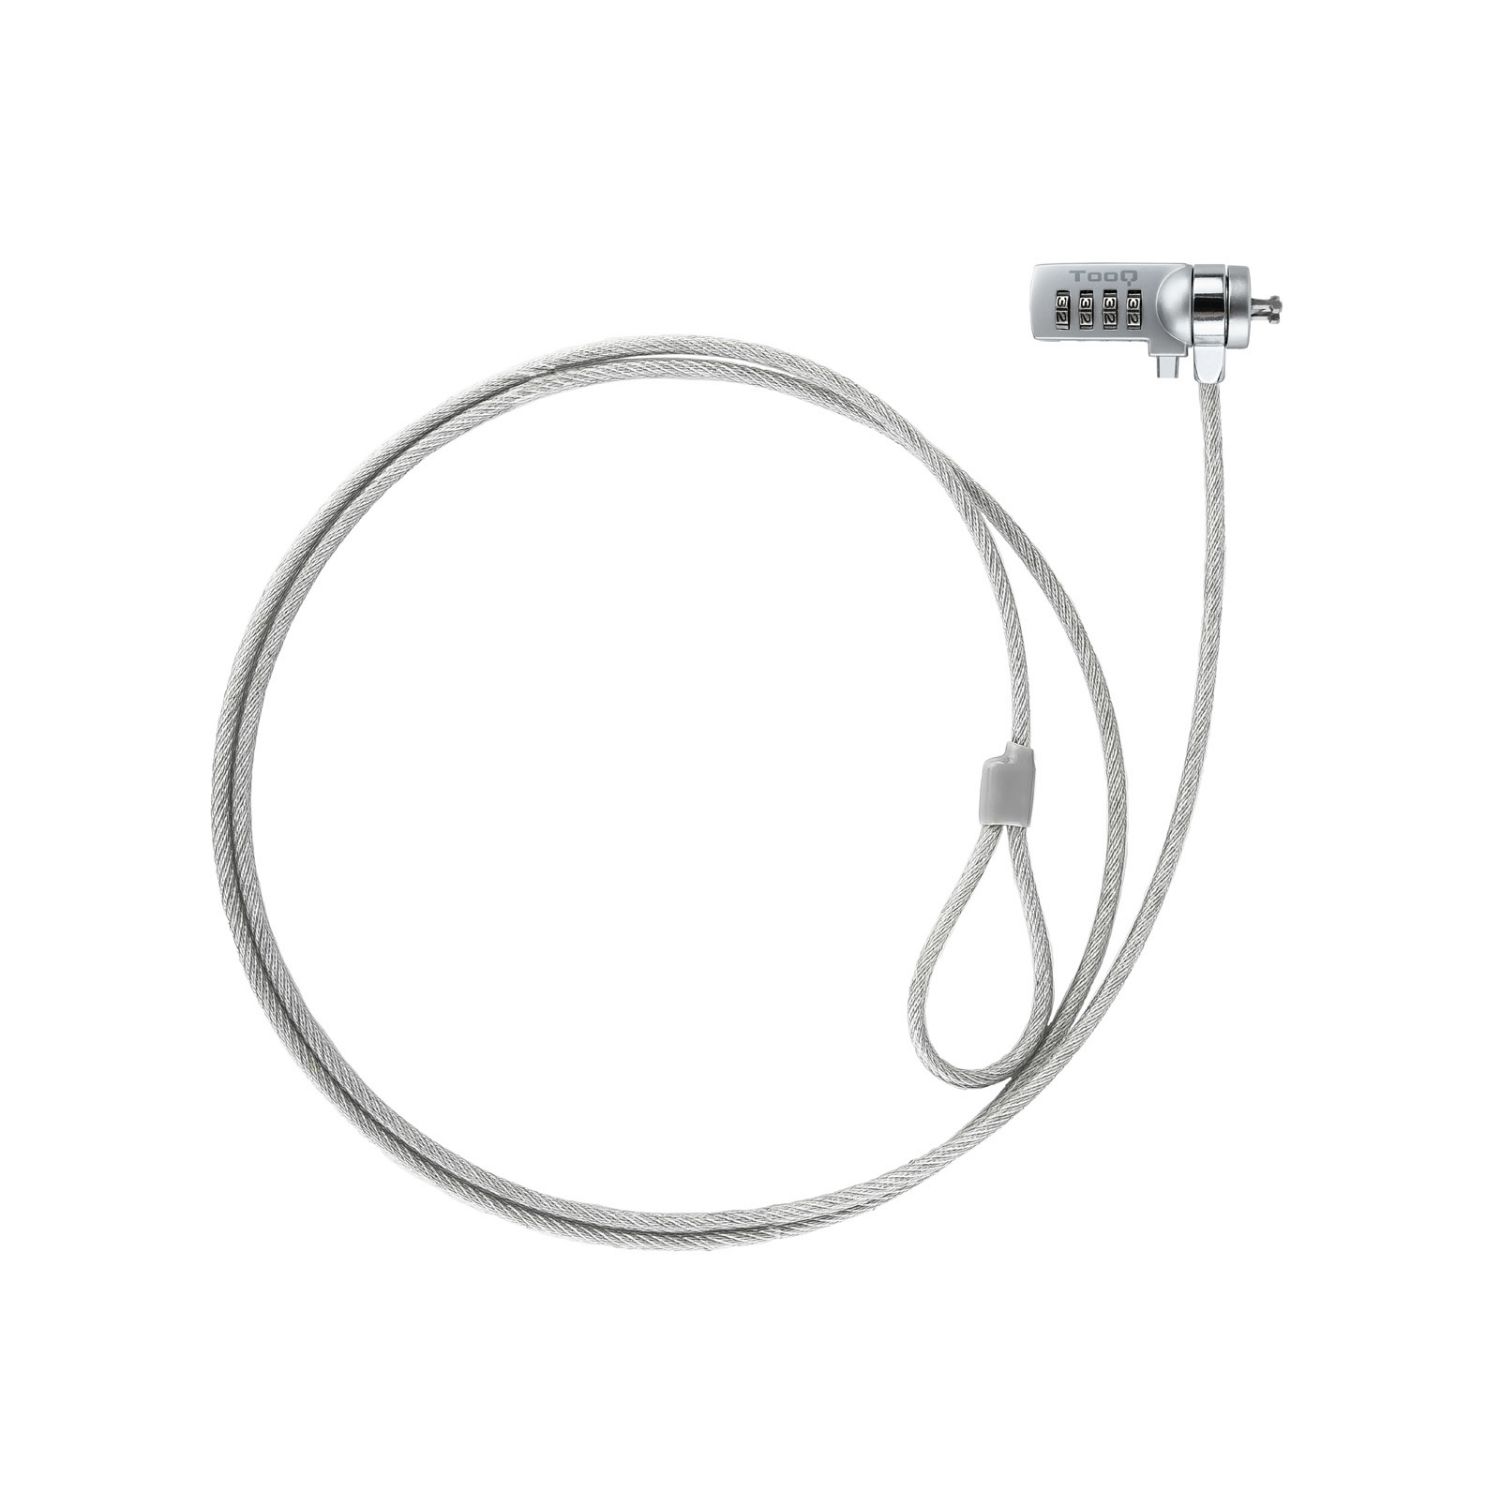 TQCLKC0015 - Cable de Seguridad para portatiles TOOQ con combinacin 1.5m (TQCLKC0015)